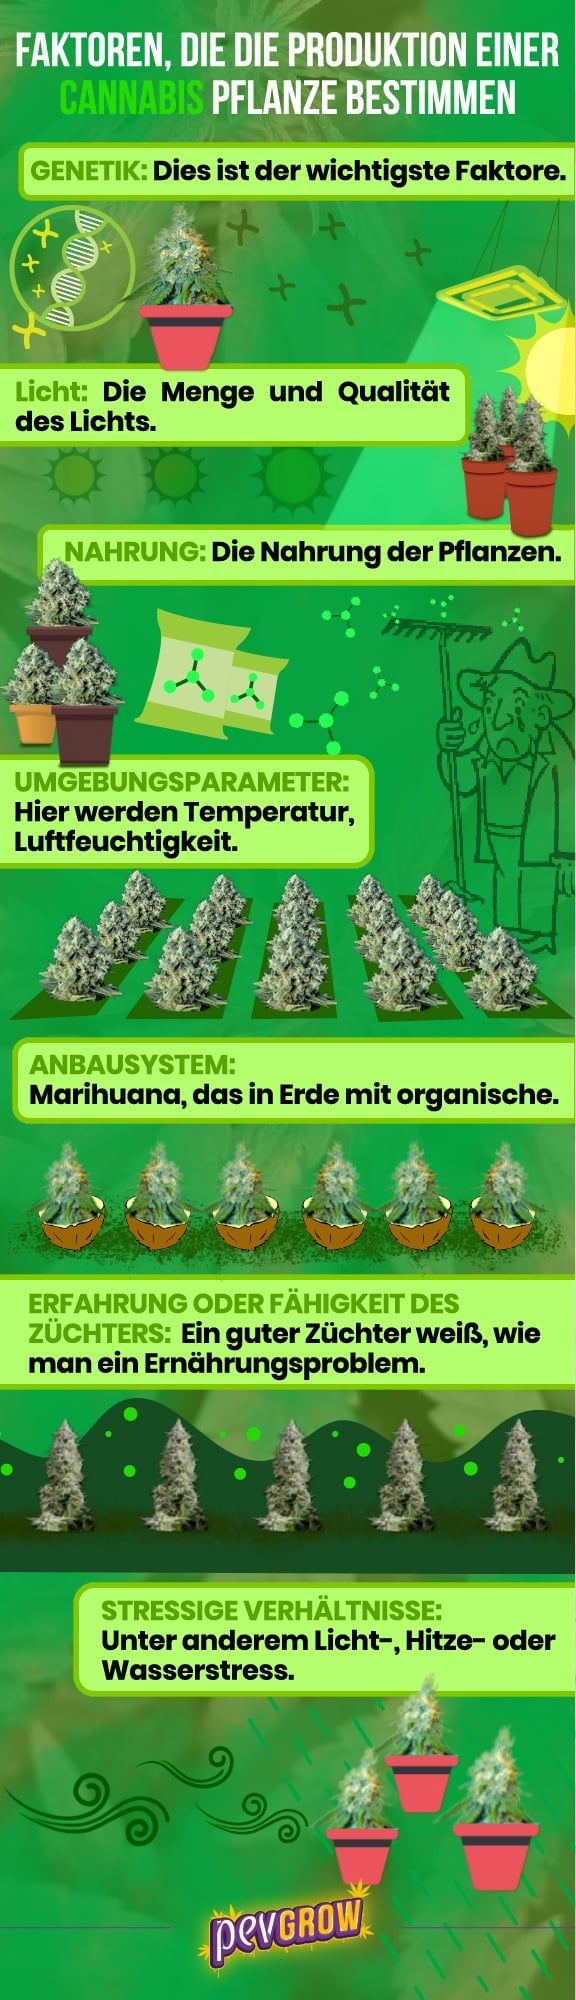 Faktoren, die die Produktion einer Cannabispflanze bestimmen, in Bildern